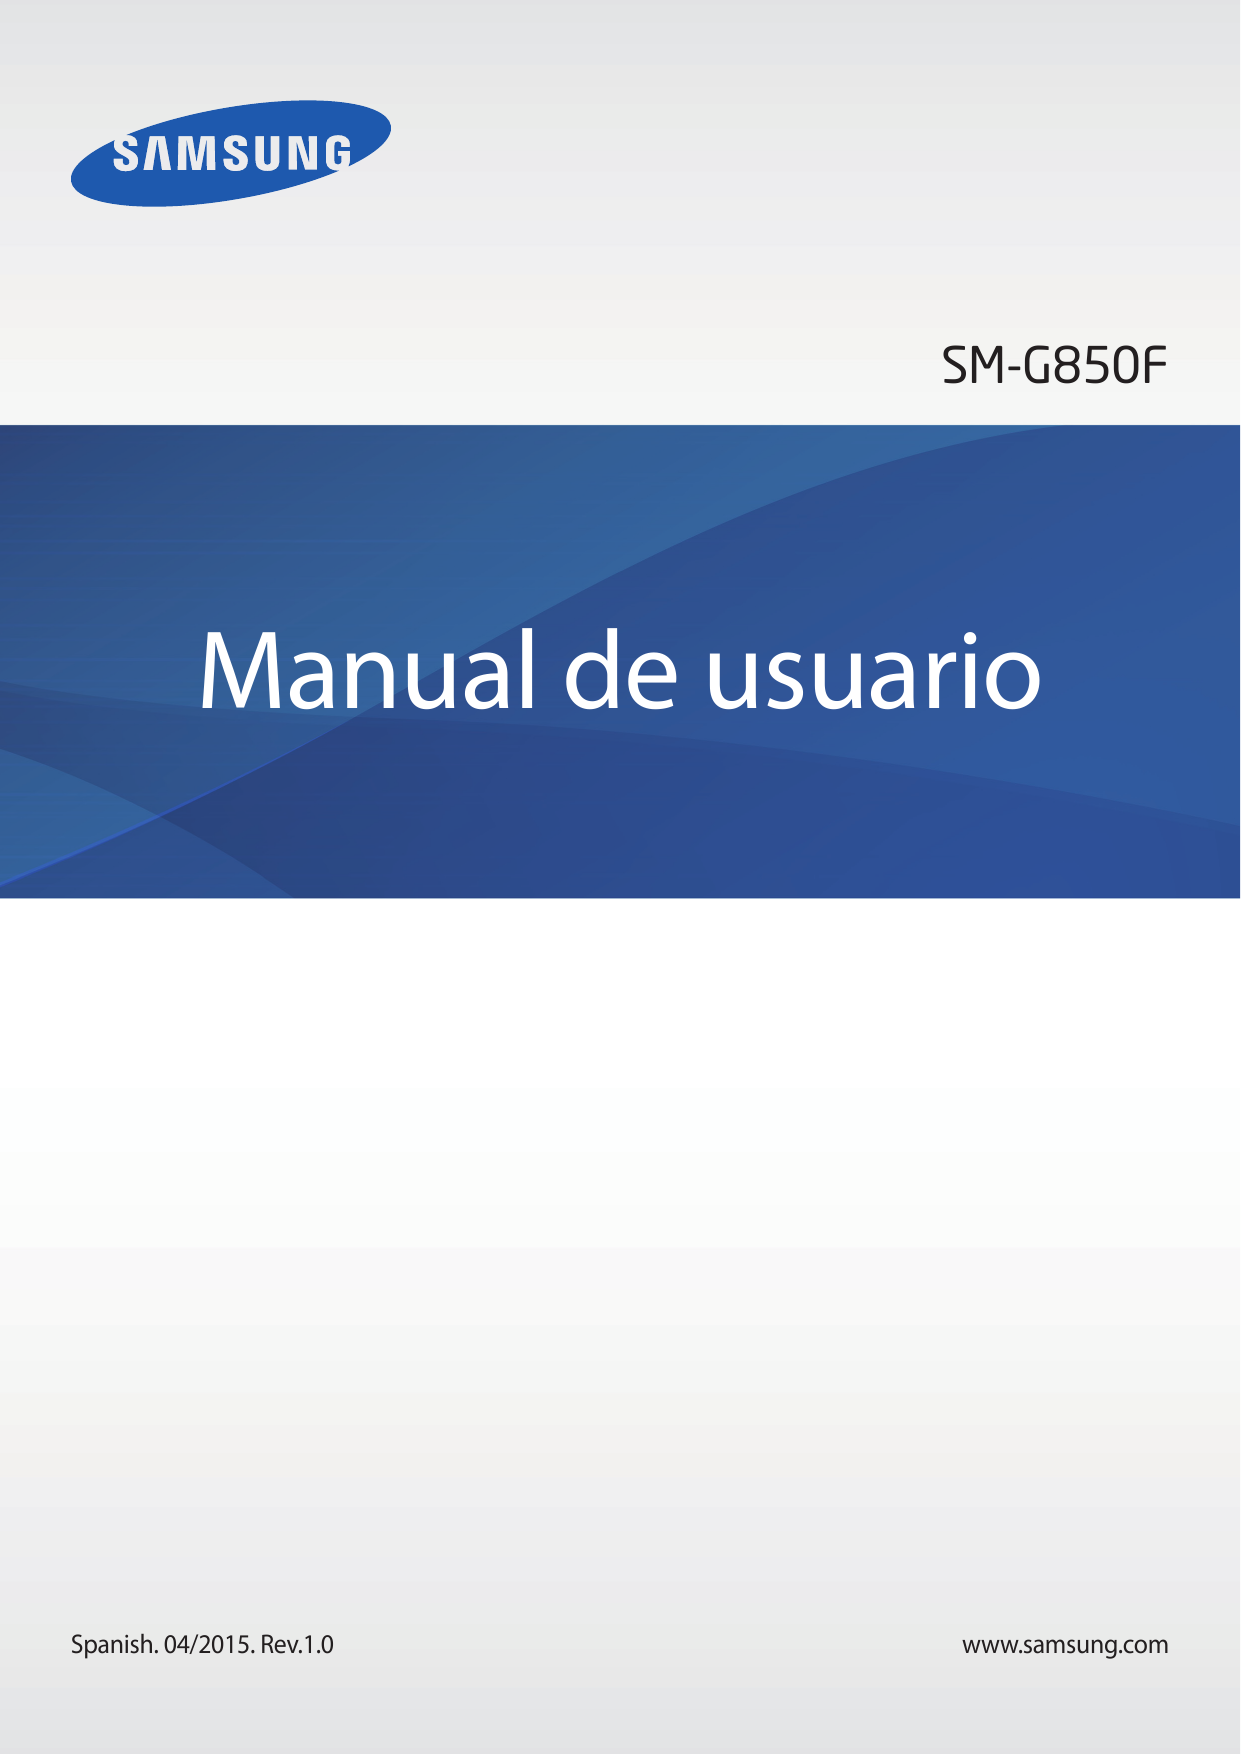 SM-G850FManual de usuarioSpanish. 04/2015. Rev.1.0www.samsung.com